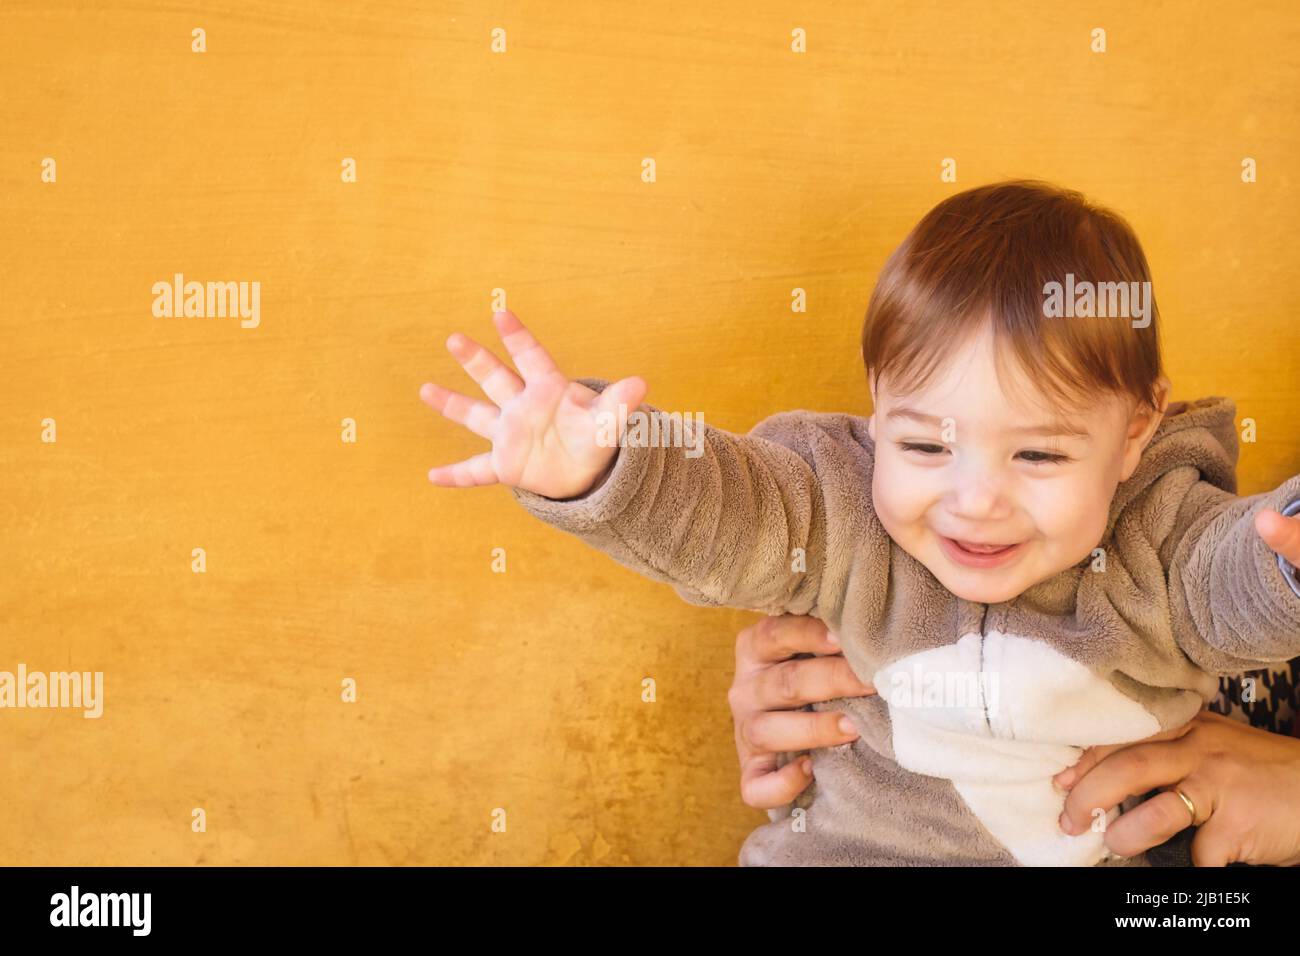 Entzückendes Baby Kleinkind Junge trägt einen warmen Winter Overall Overall vor einem hellen orange Wand Hintergrund Stockfoto